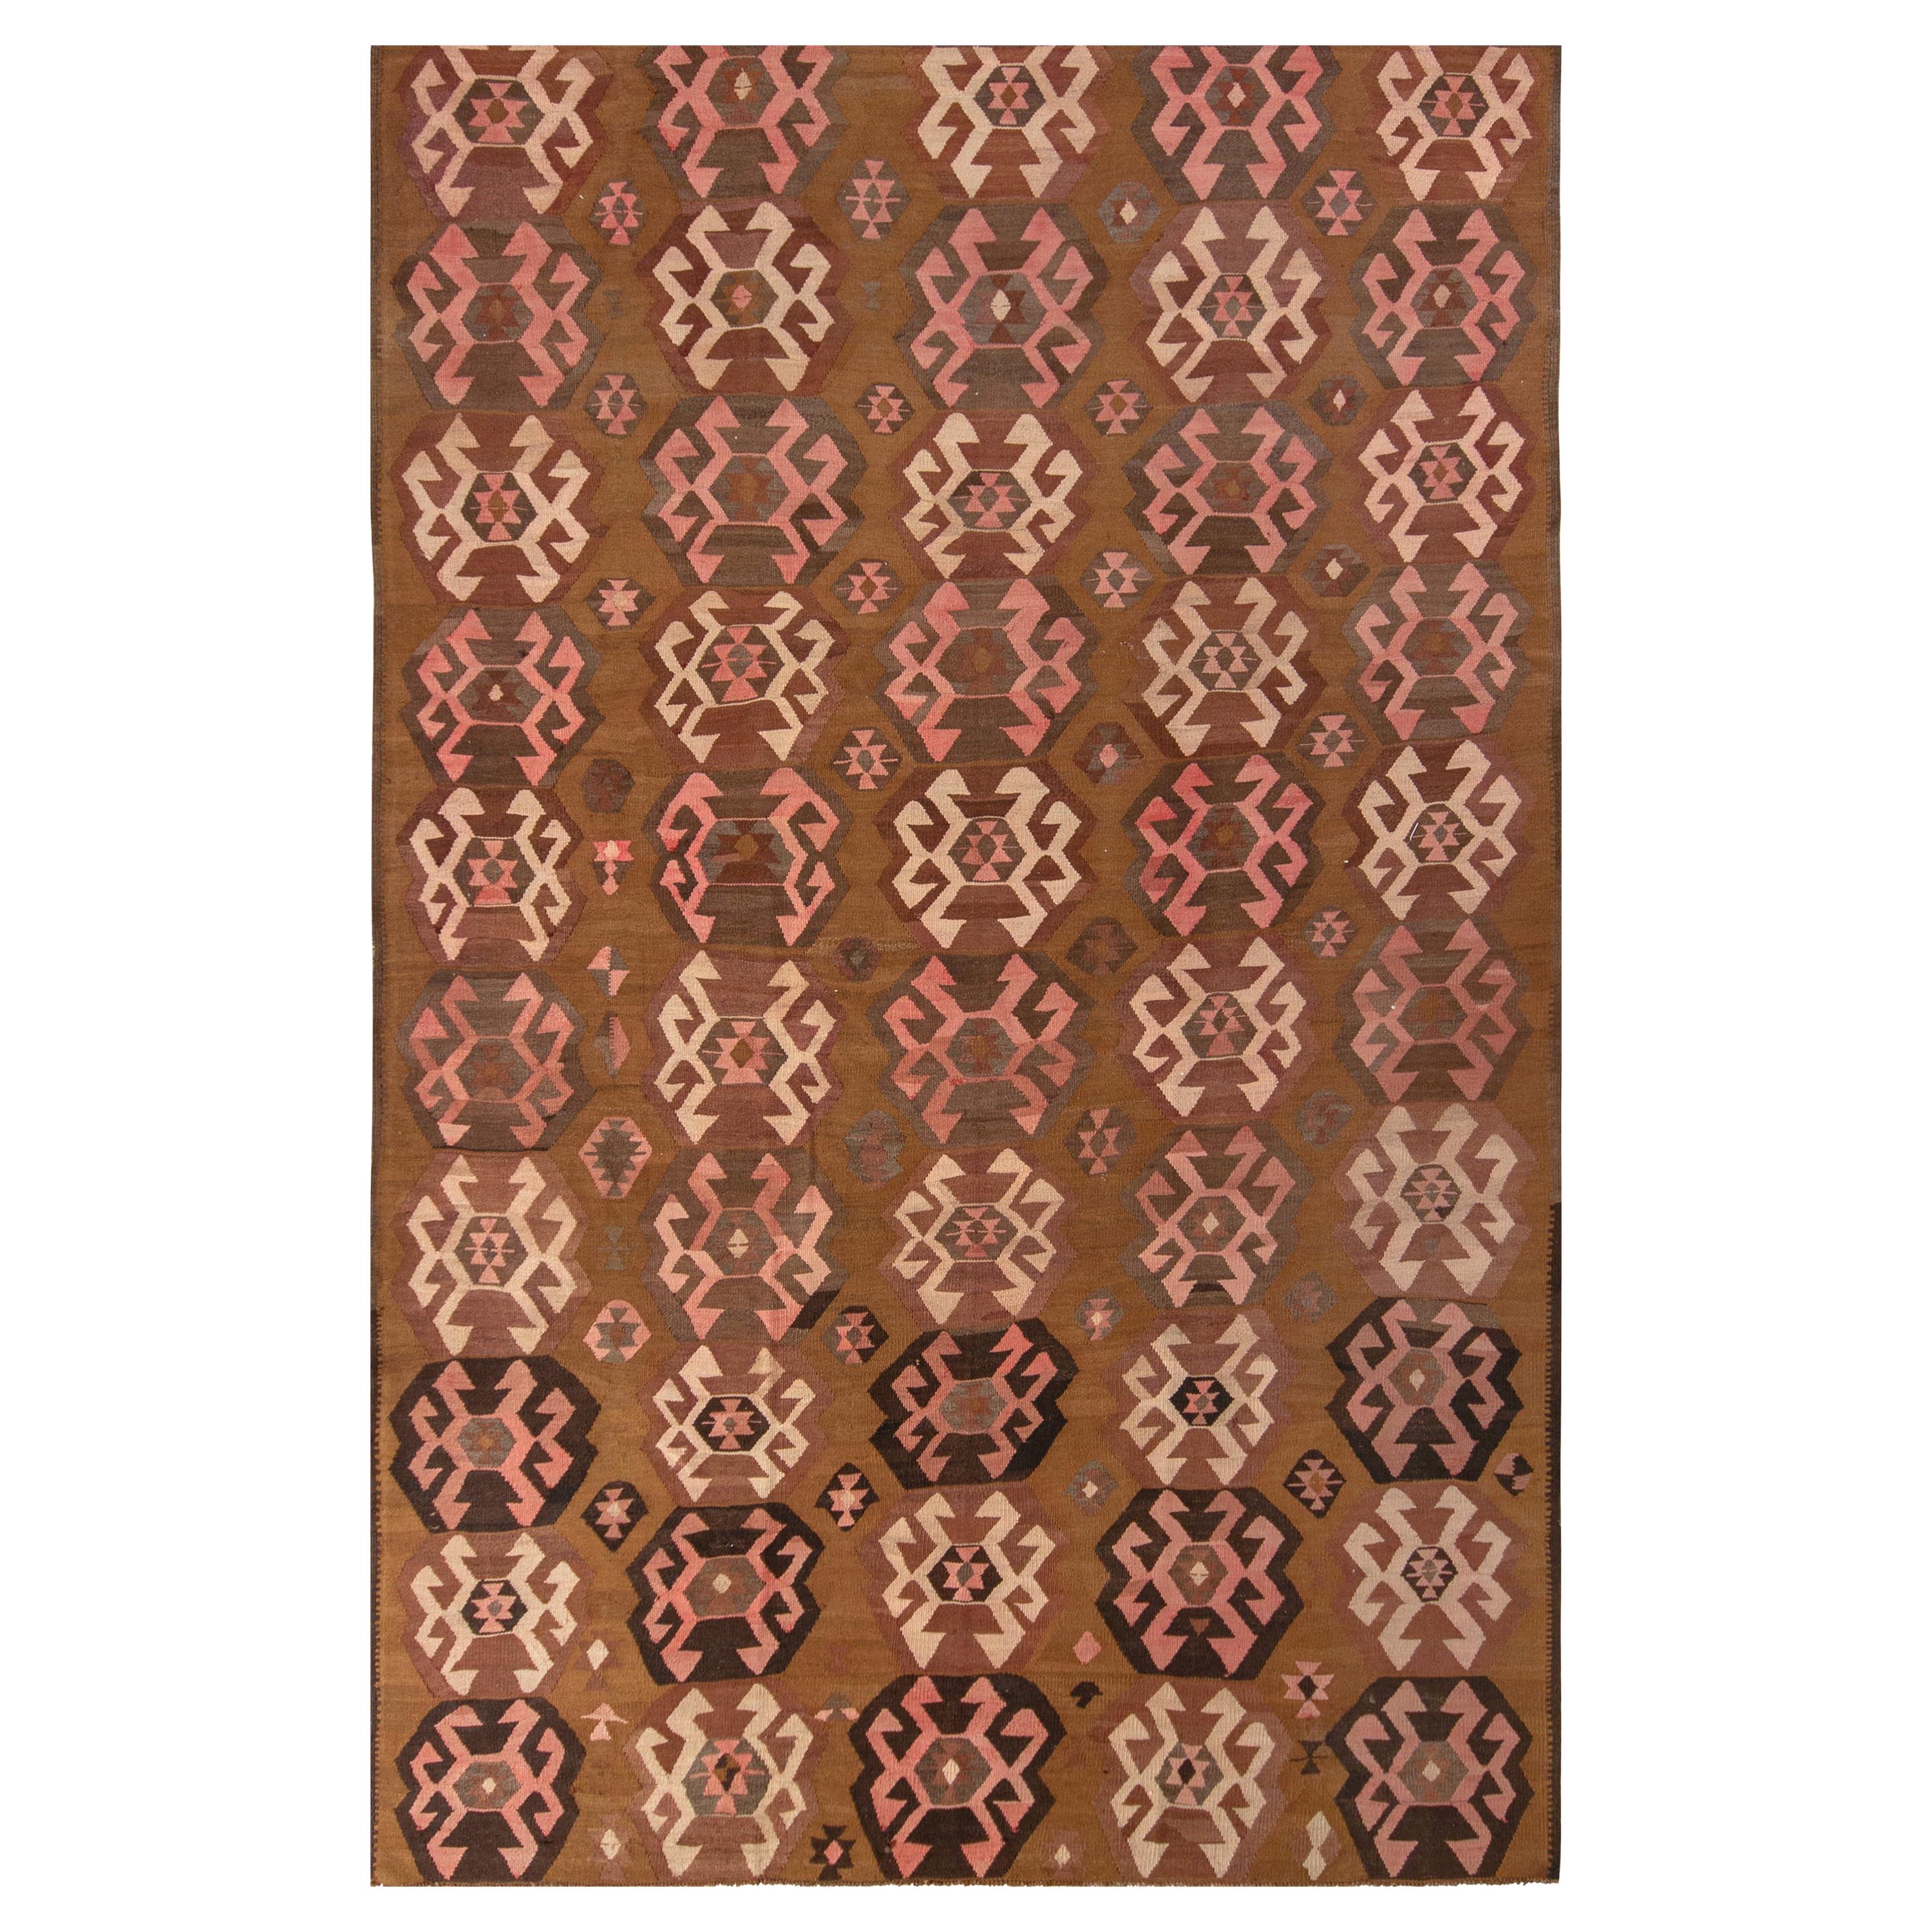 Handwoven Vintage Kilim Rug in Beige-Brown Geometric Pattern by Rug & Kilim